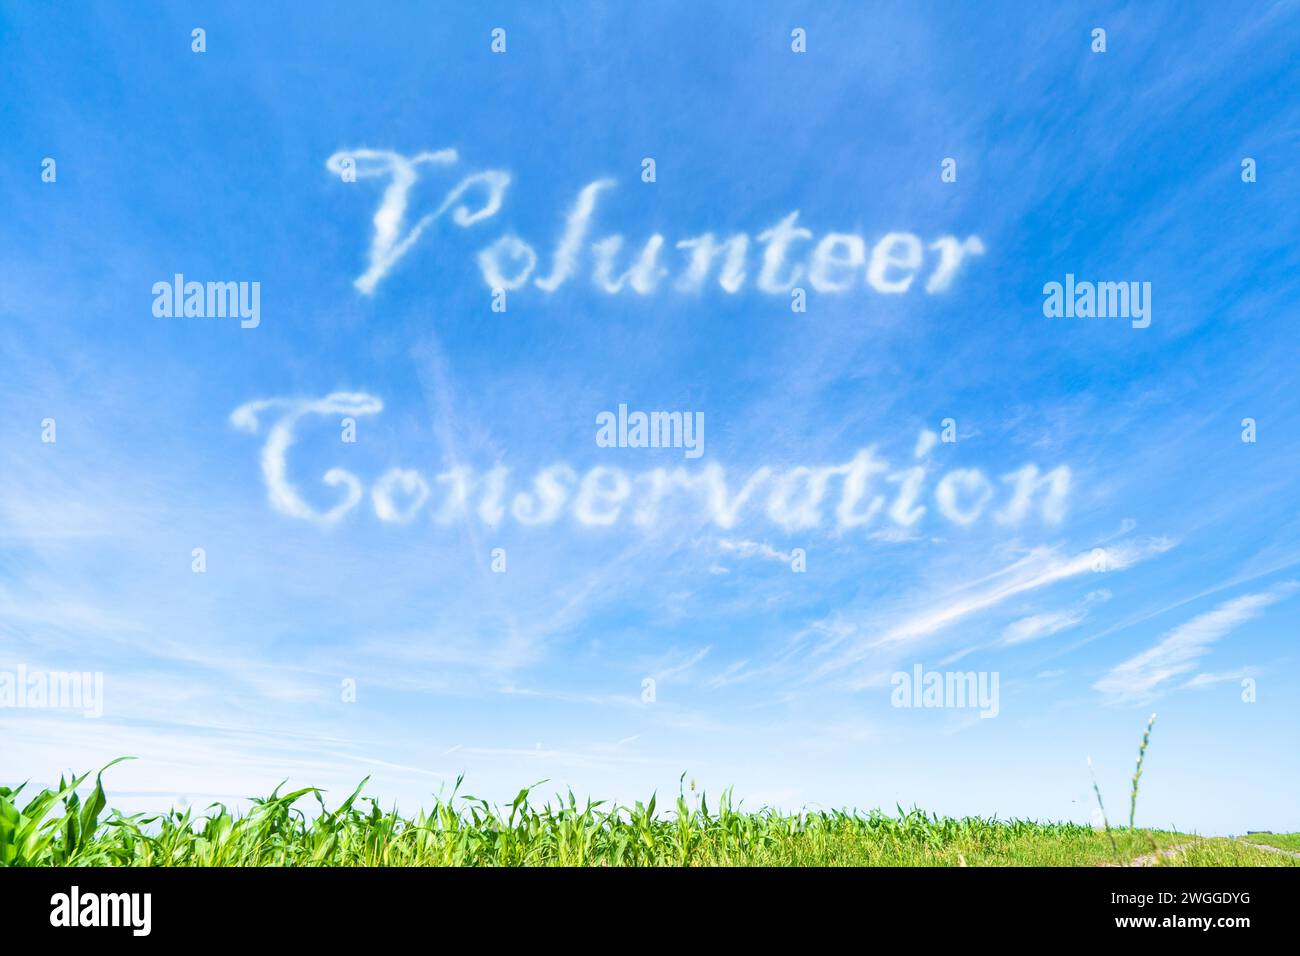 Freiwilligenschutz: Einzelpersonen, die ihre Zeit und ihre Anstrengungen zu Umweltprojekten und -Initiativen beitragen. Stockfoto